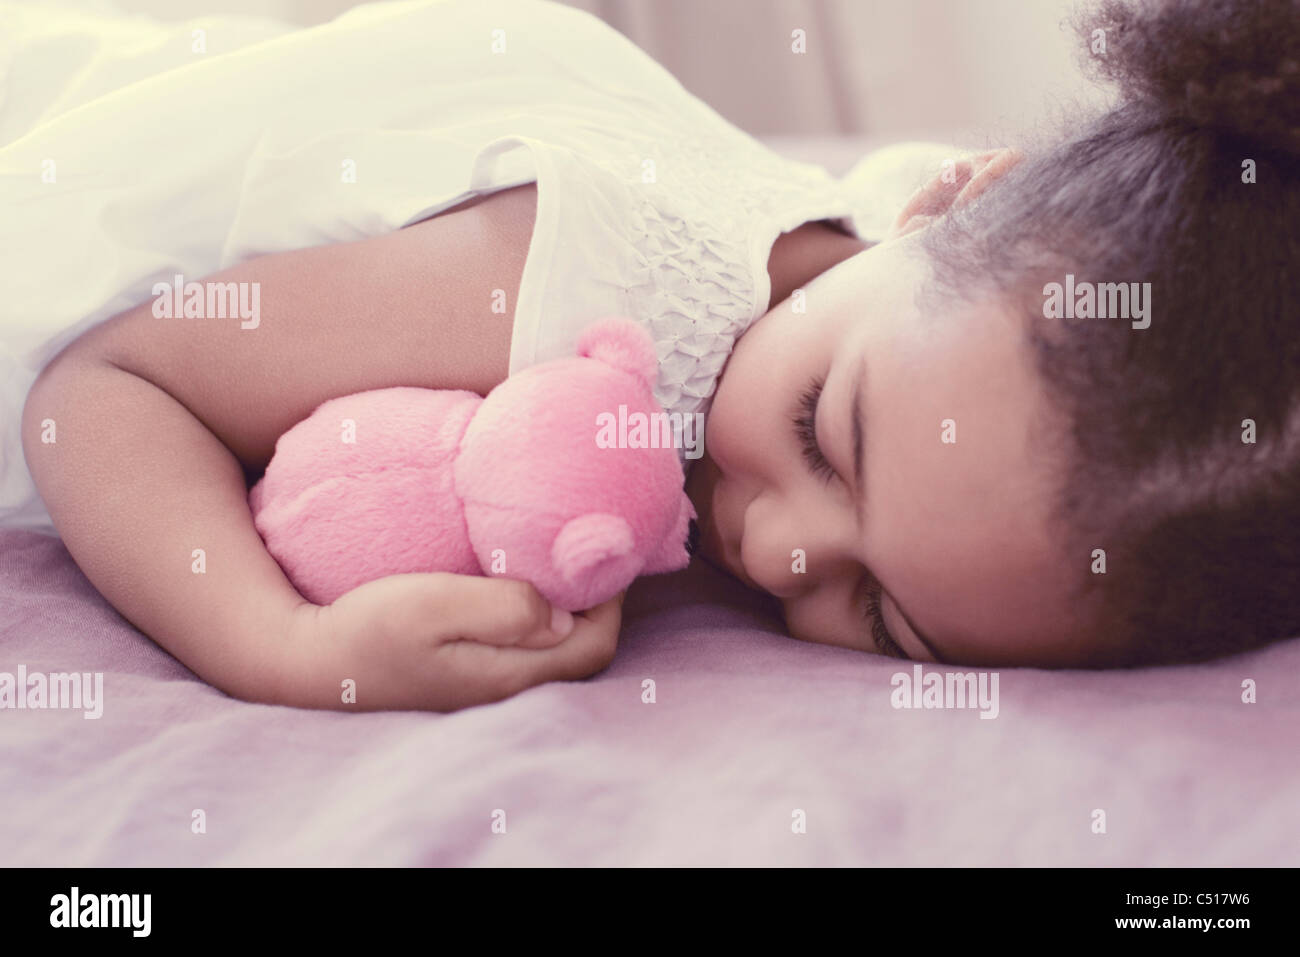 Little girl sleeping with stuffed animal Stock Photo